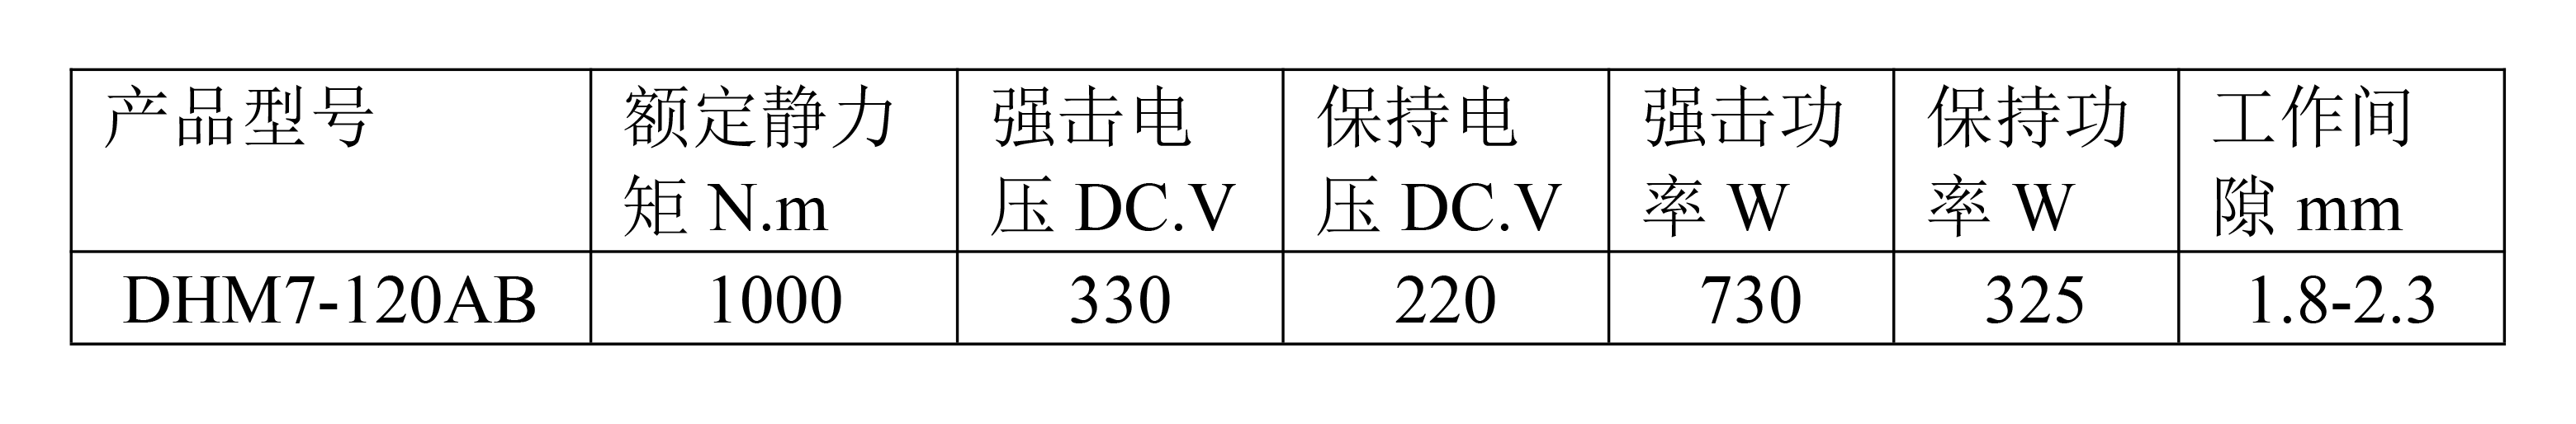 DHM7-120AB说明书-1.png